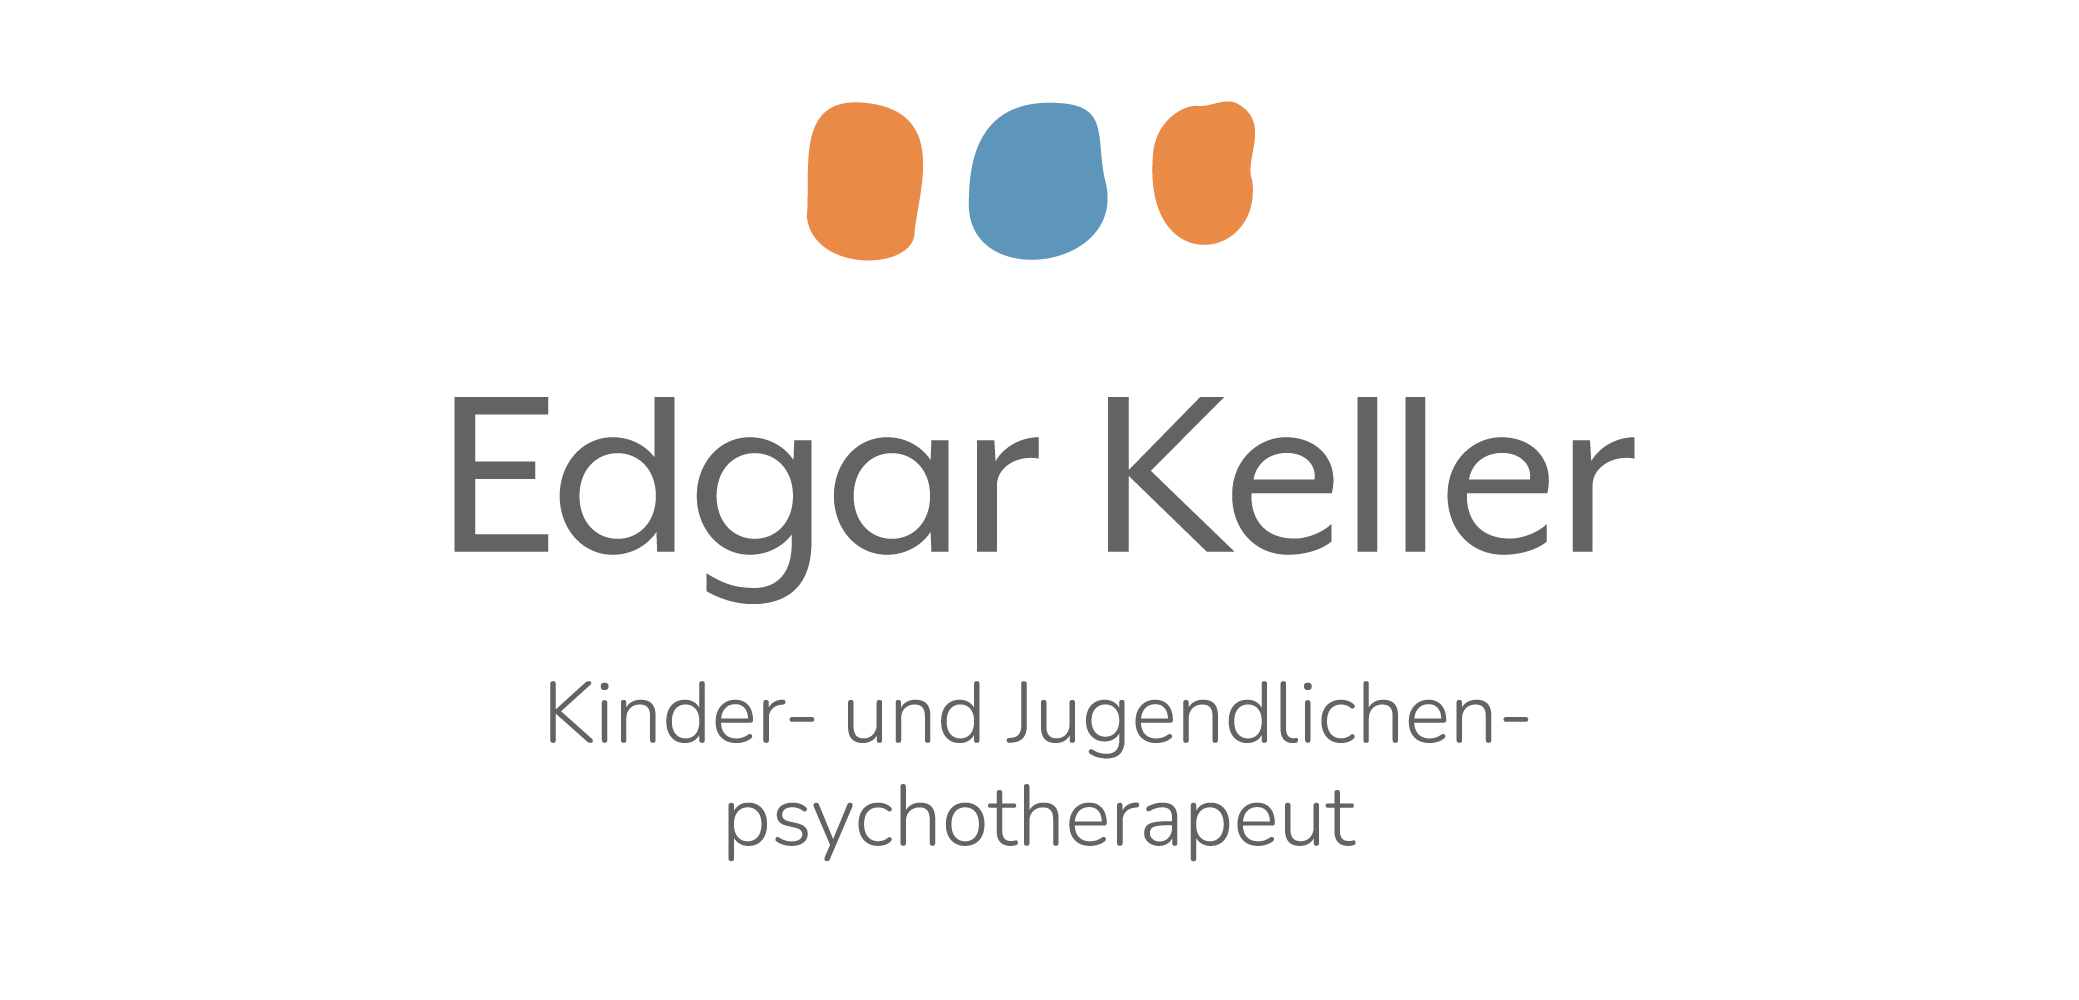 Edgar Keller Kinder- und Jugendlichen­psychotherapeut Logo